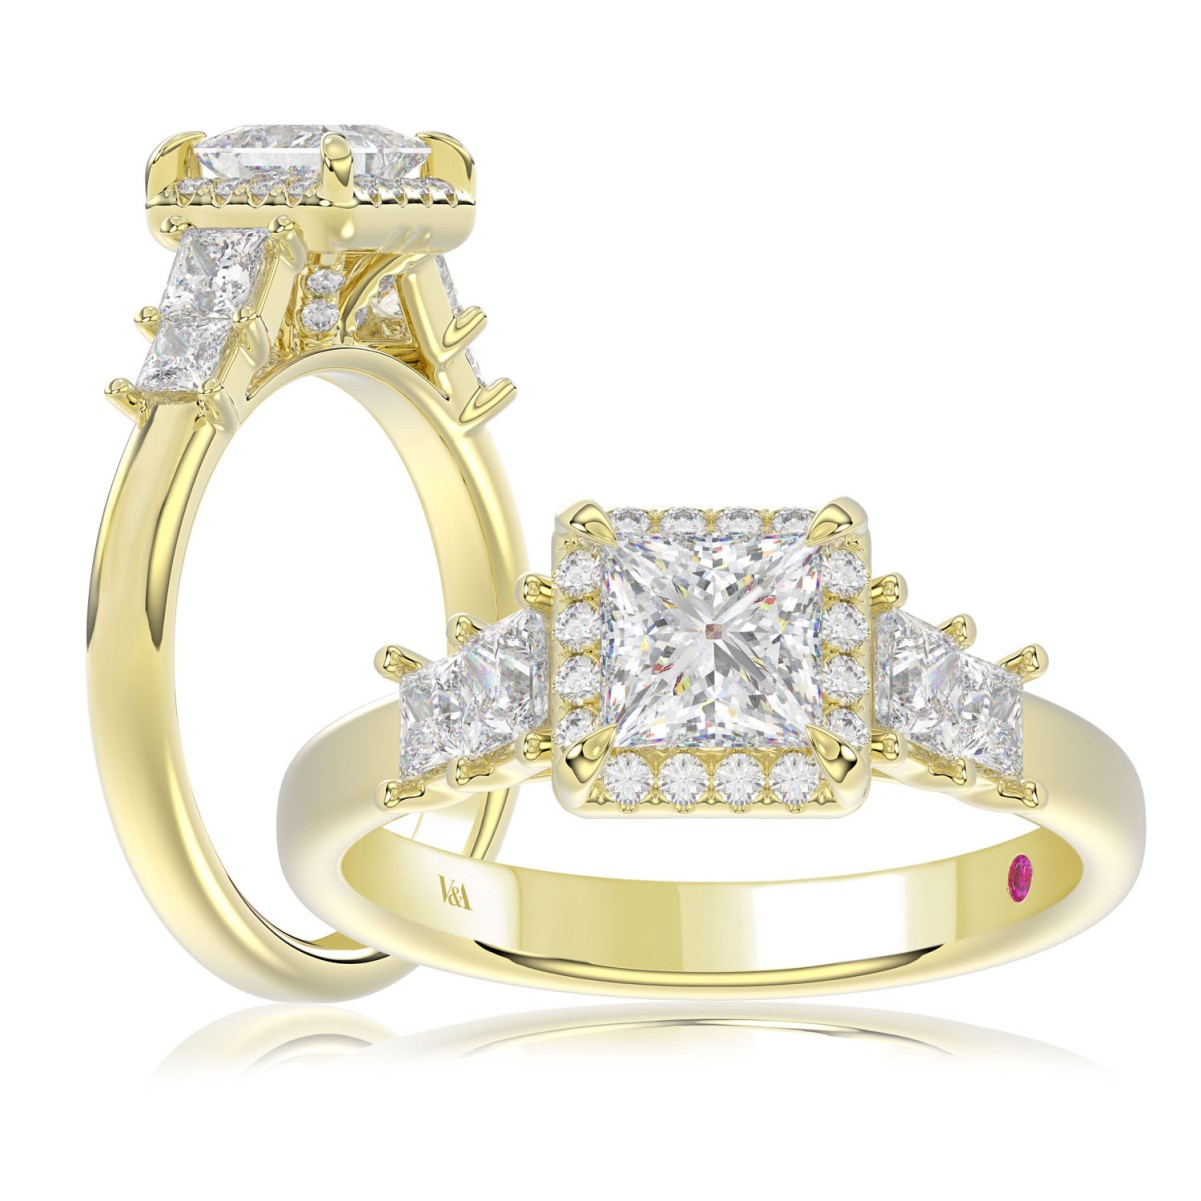 14K YELLOW GOLD 1 1/2CT ROUND/PRINCESS DIAMOND LADIES RING( CENTER STONE PRINCESS DIAMOND 3/4 CT)